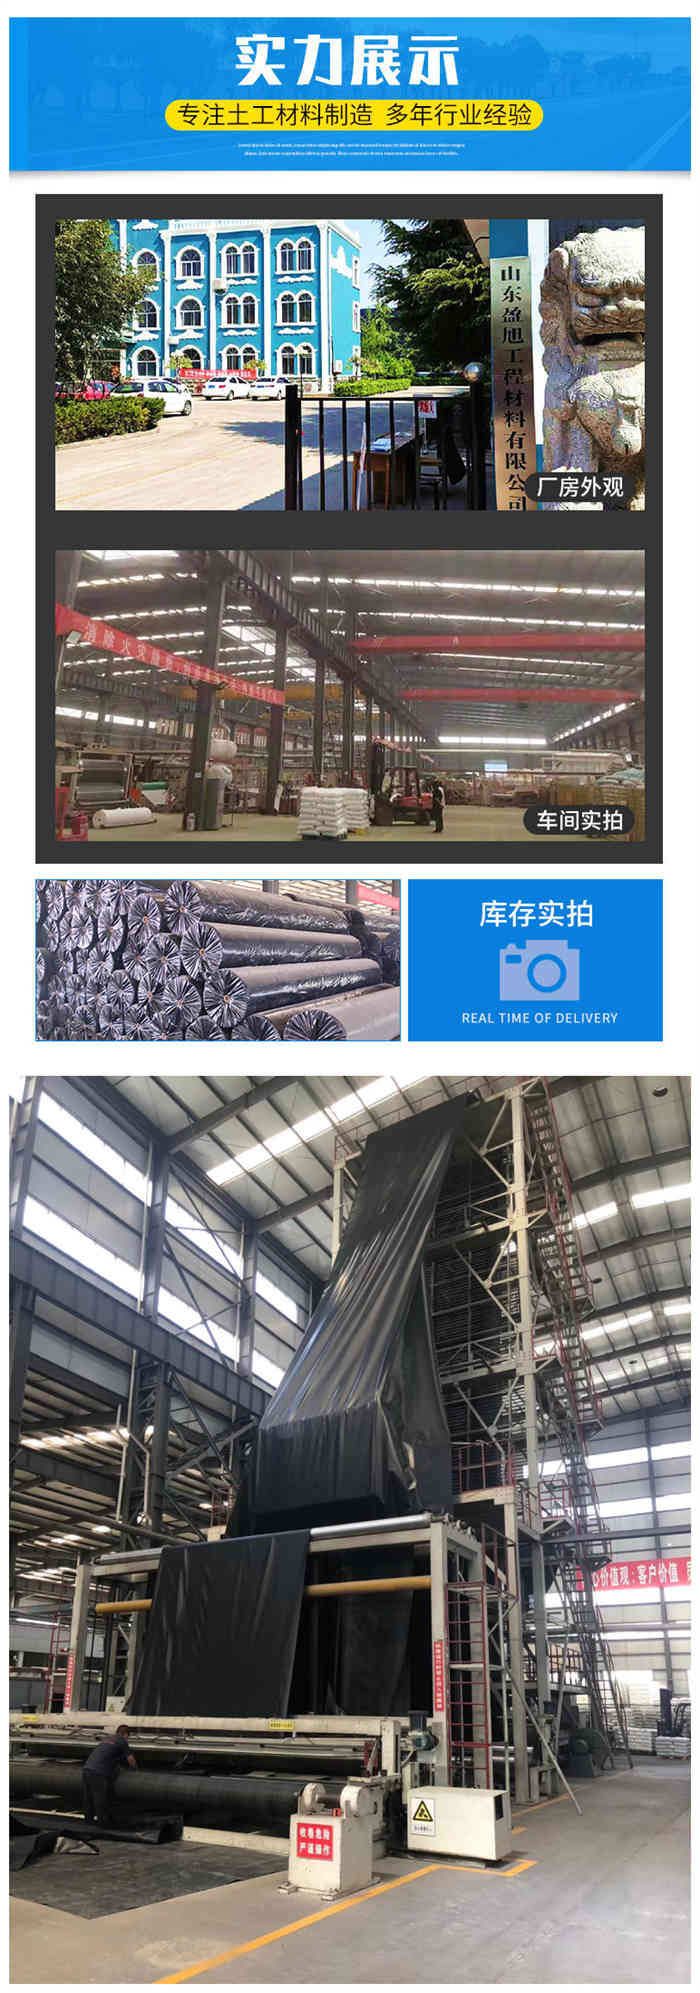 扬州海水养殖土工膜图片第5张-盈旭土工材料